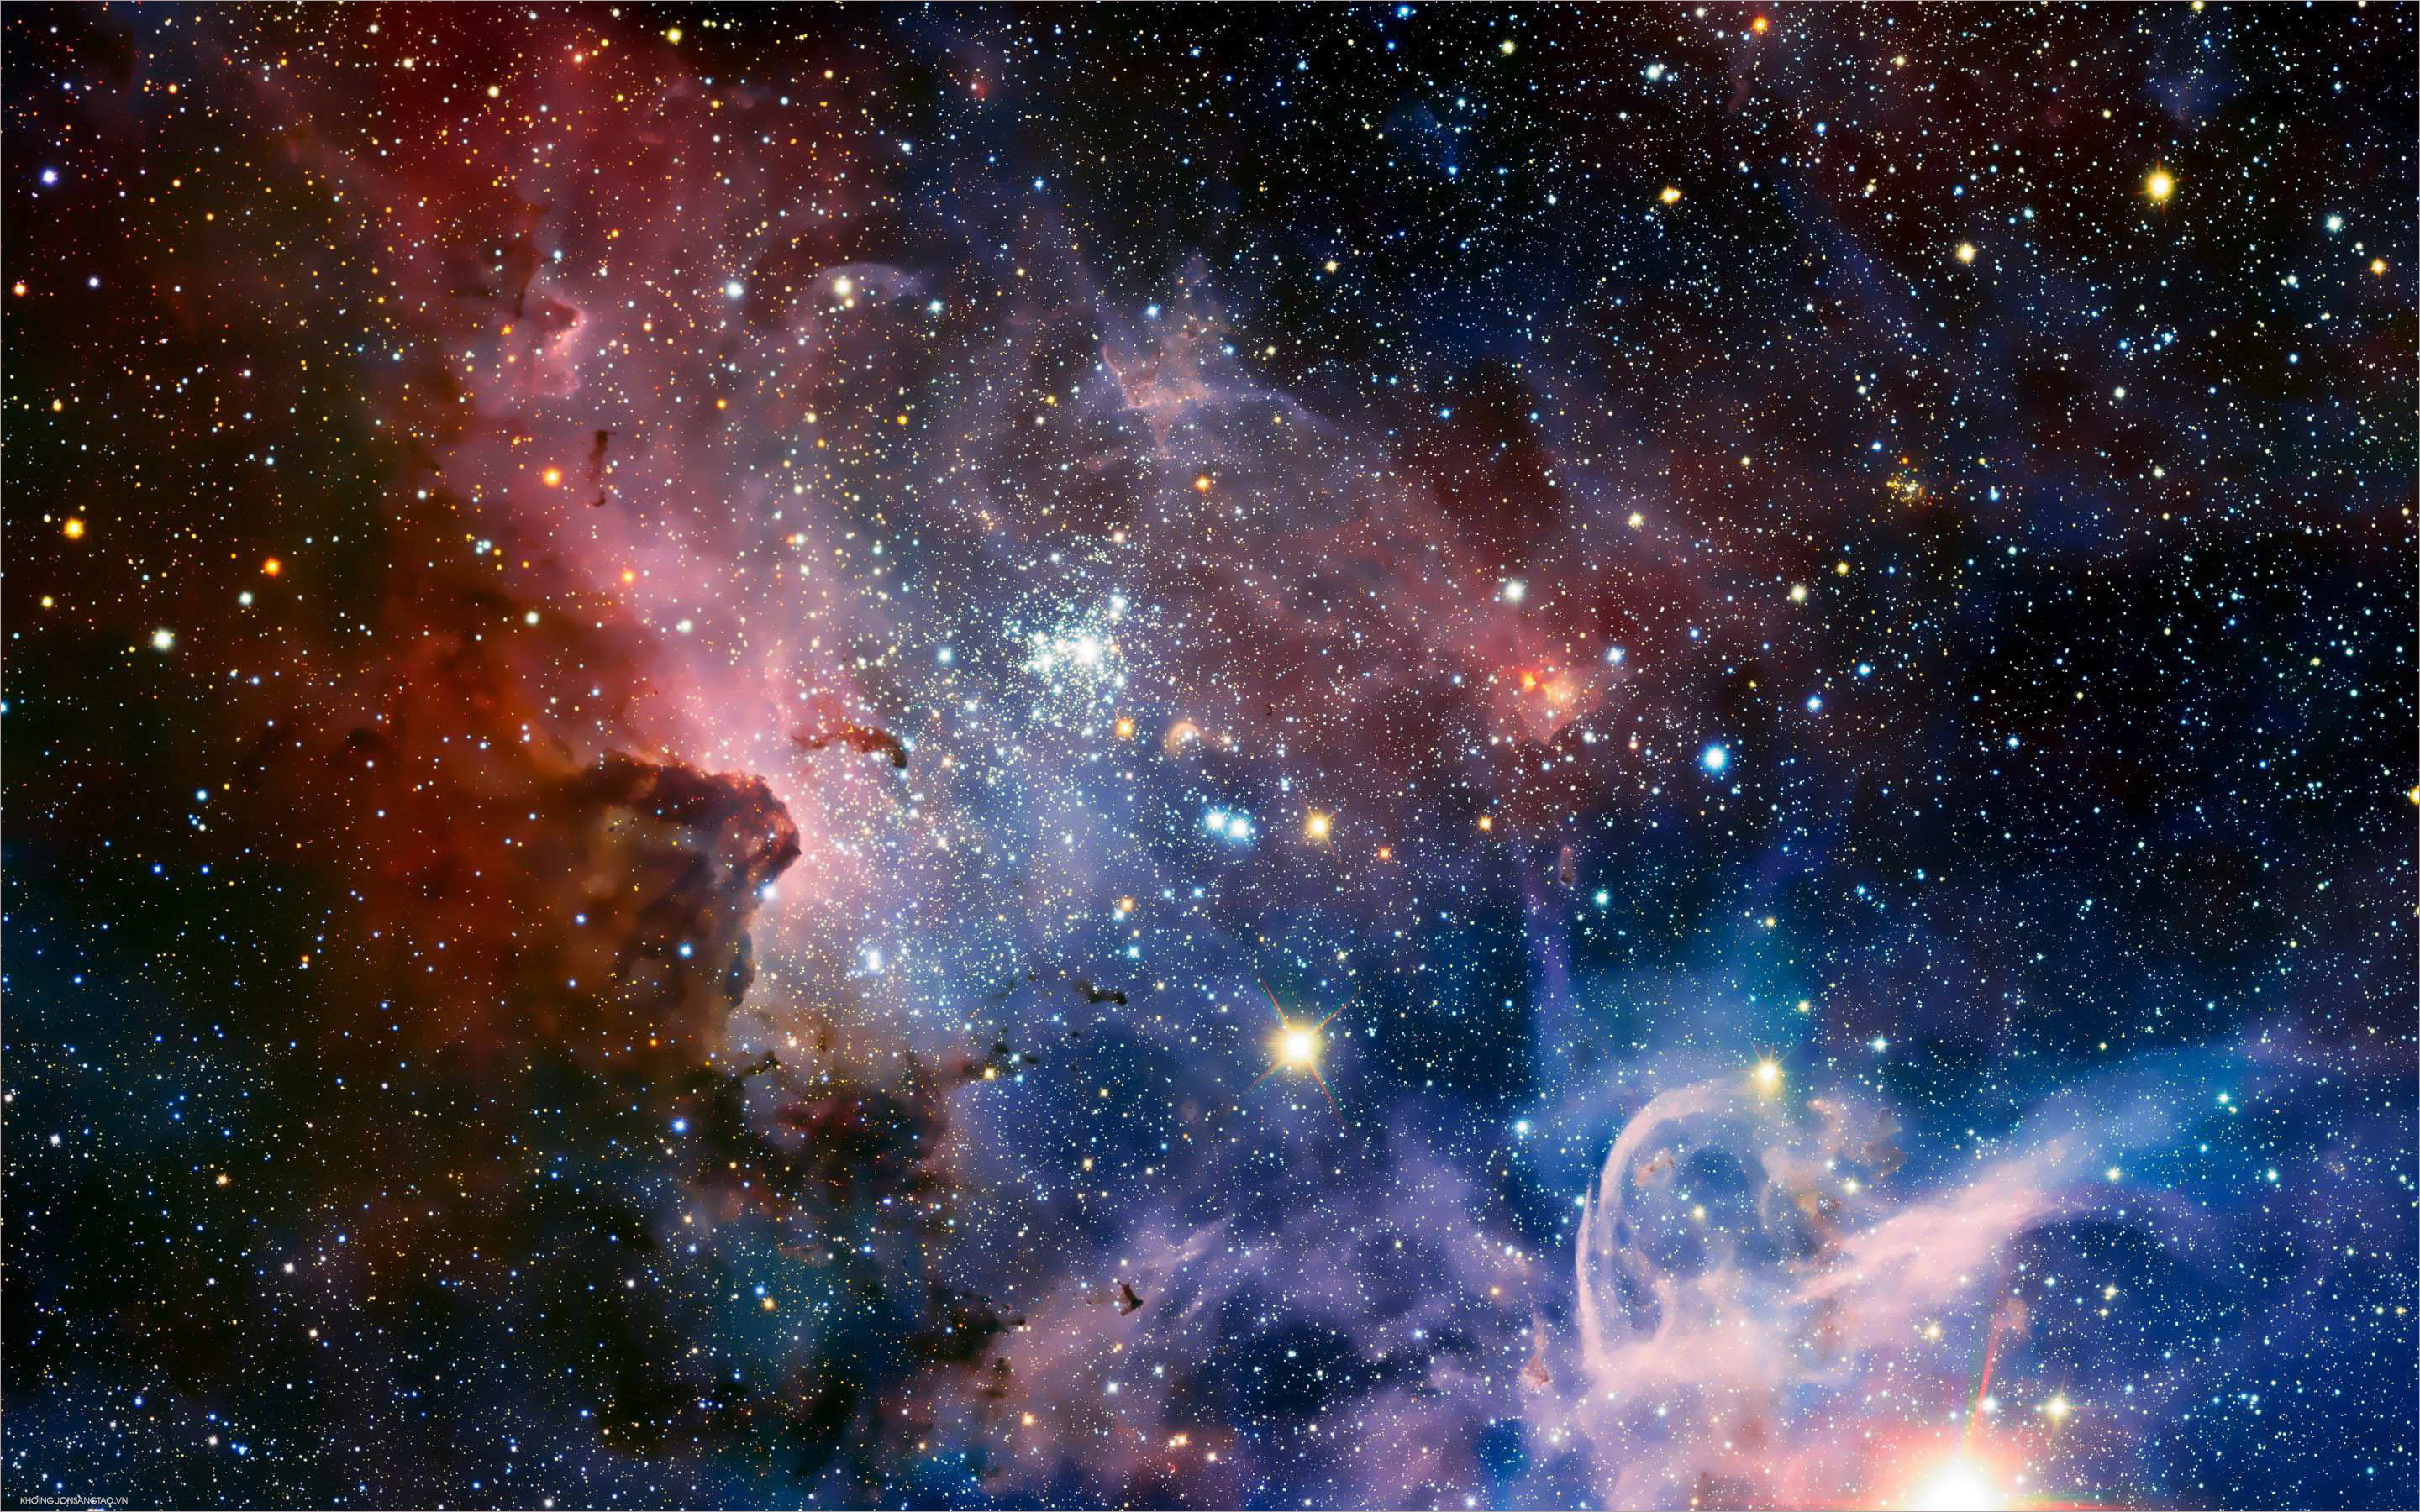 Thả mình vào cuộc phiêu lưu đầy kỳ thú với bức hình nền thiên hà đầy mê hoặc. Cảm nhận được sức cuốn hút của vũ trụ với hàng ngàn ngôi sao, hành tinh và các hiện tượng vũ trụ đầy màu sắc.